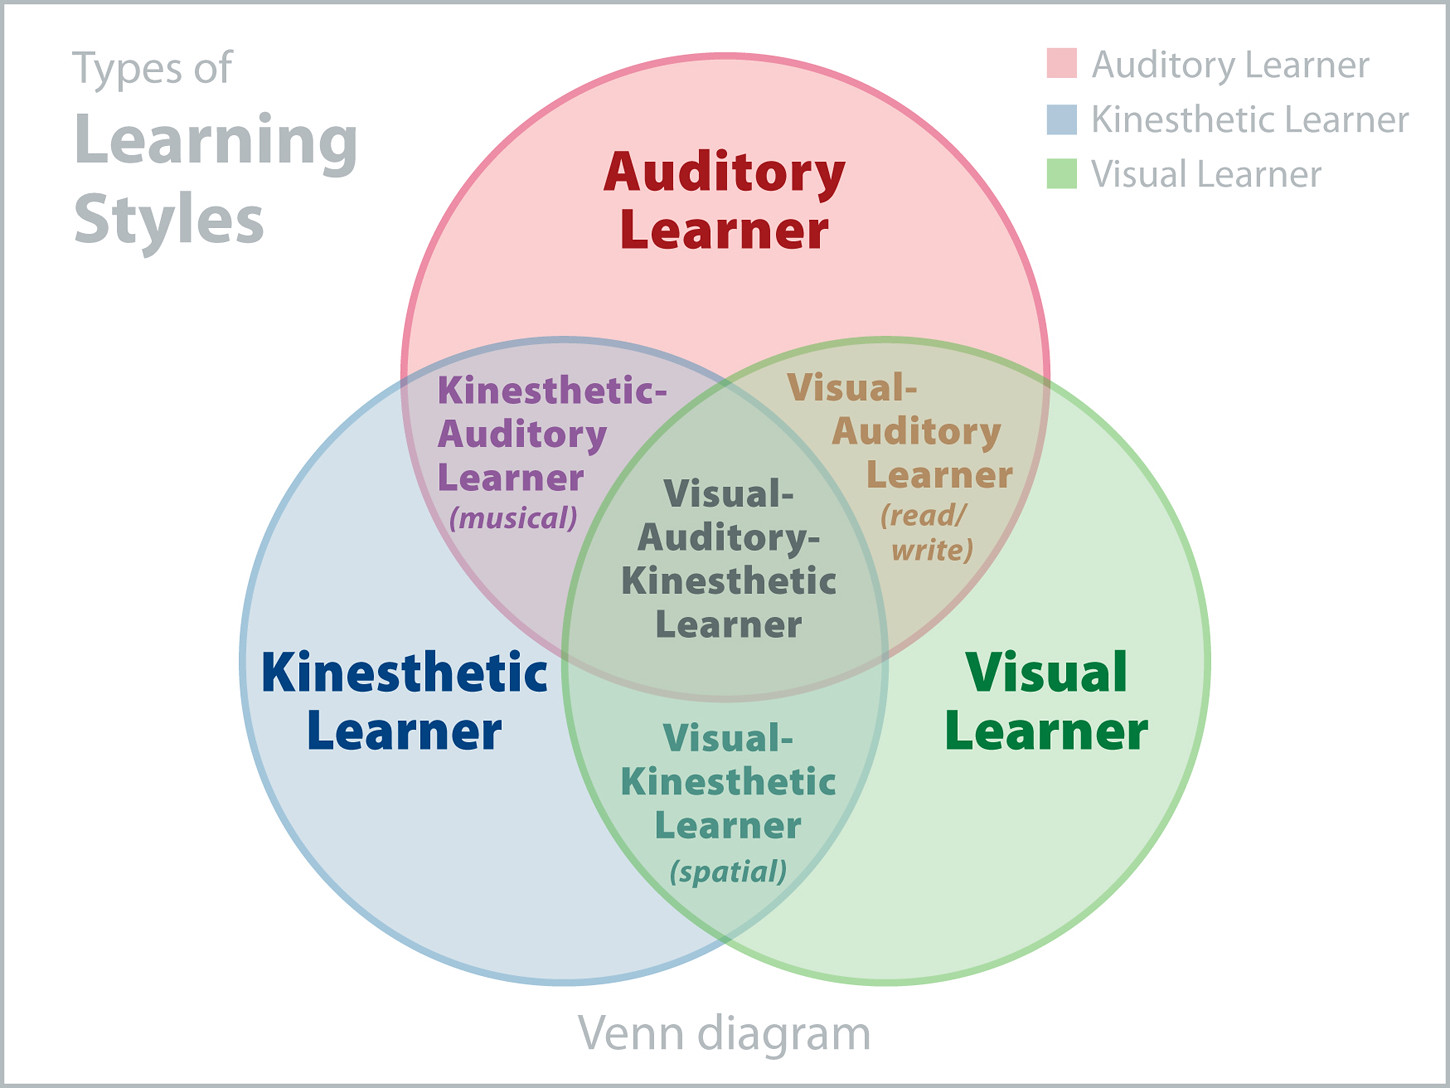 aula de aprendizado de idiomas on-line 3d moderno, modelo de